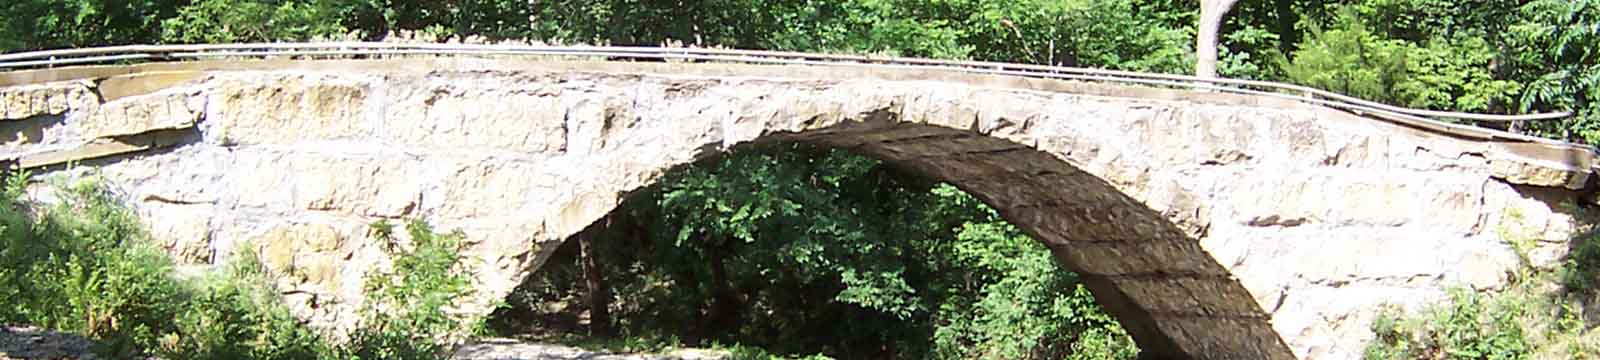 Photo of a stone arch bridge